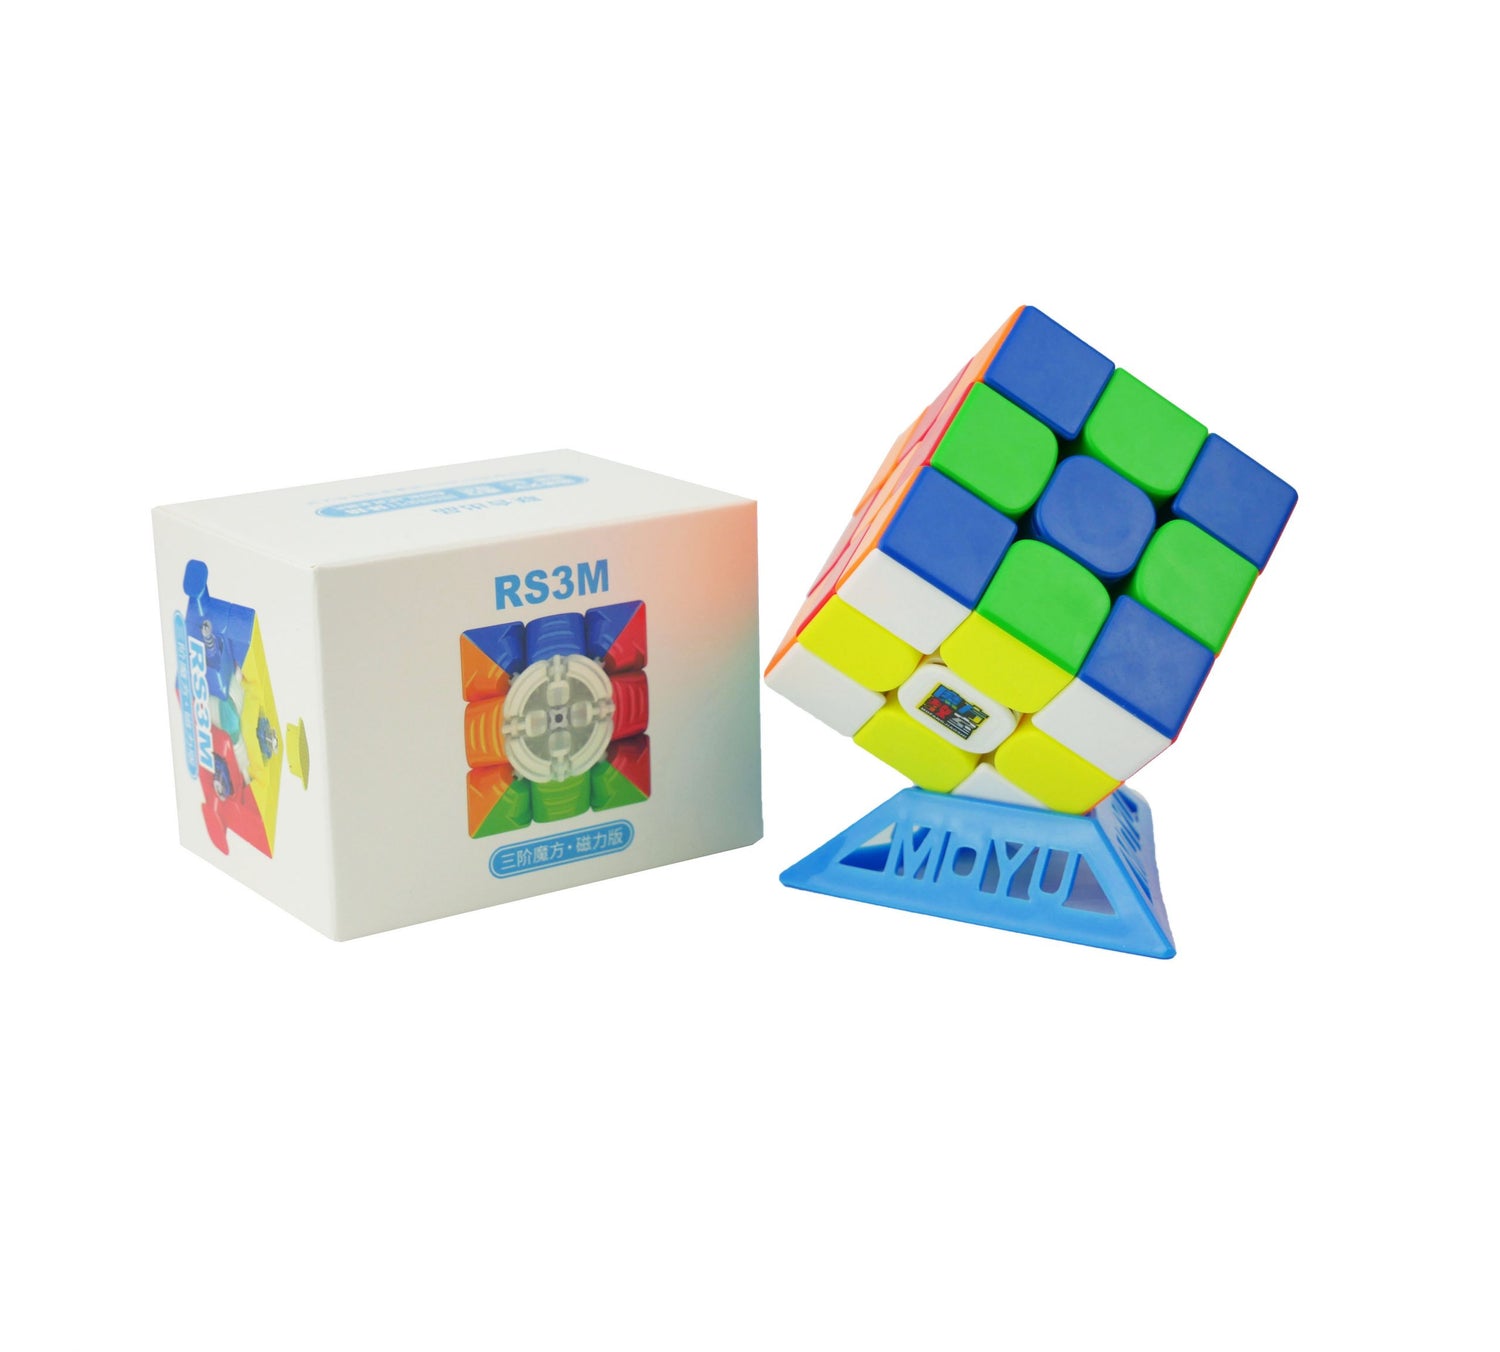 3x3 Rubik's Cubes